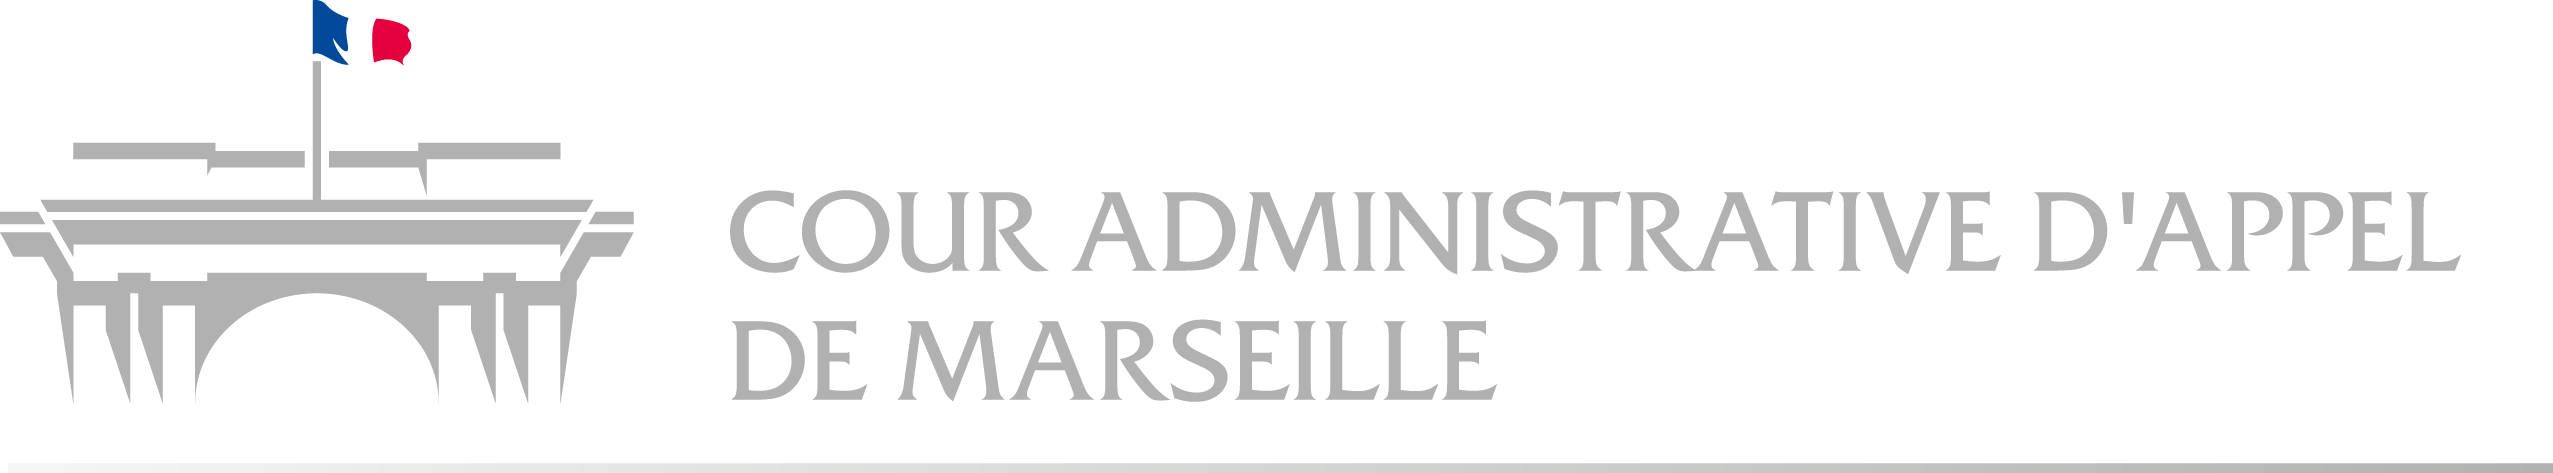 Logo Cour administrative d'appel de Marseille